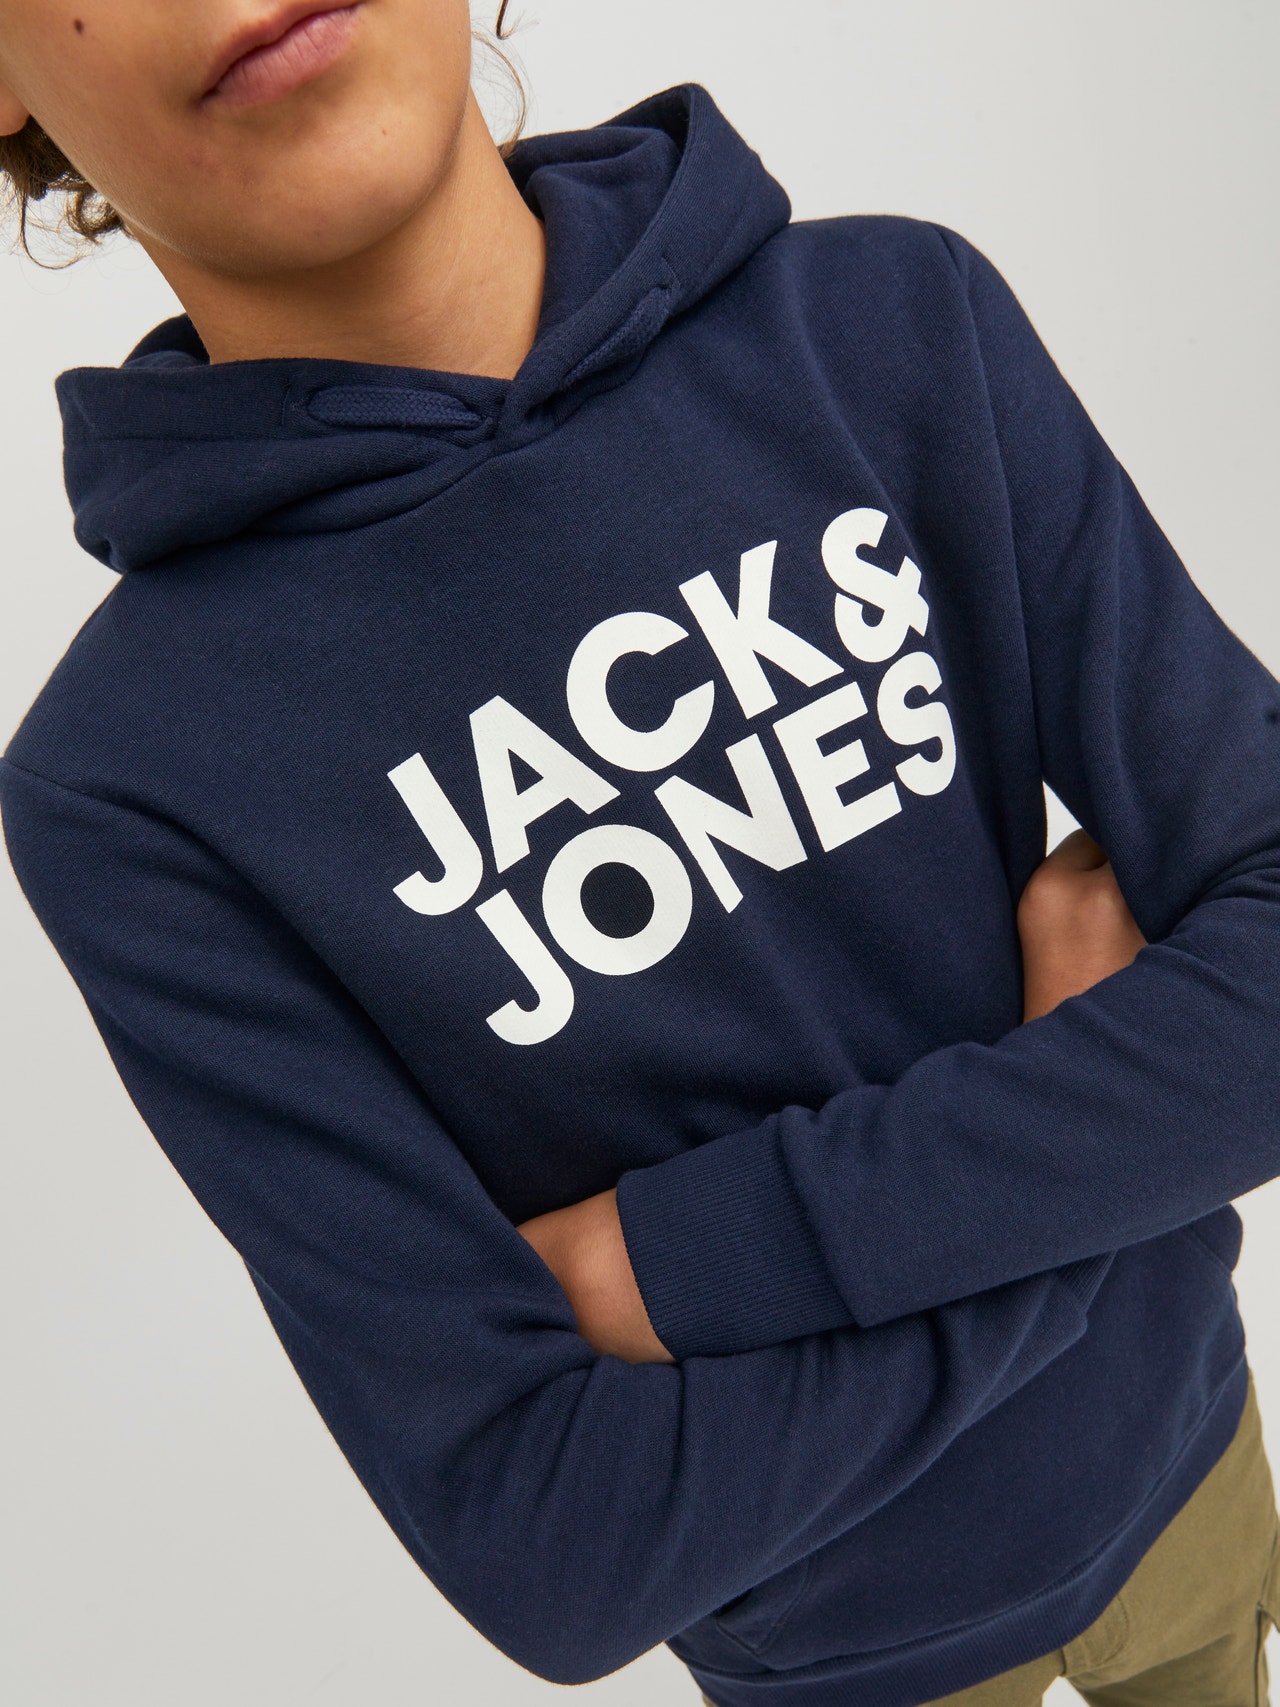 Jack & Jones Paquete de 2 Sudadera con capucha Logotipo Para chicos -Black - 12210980